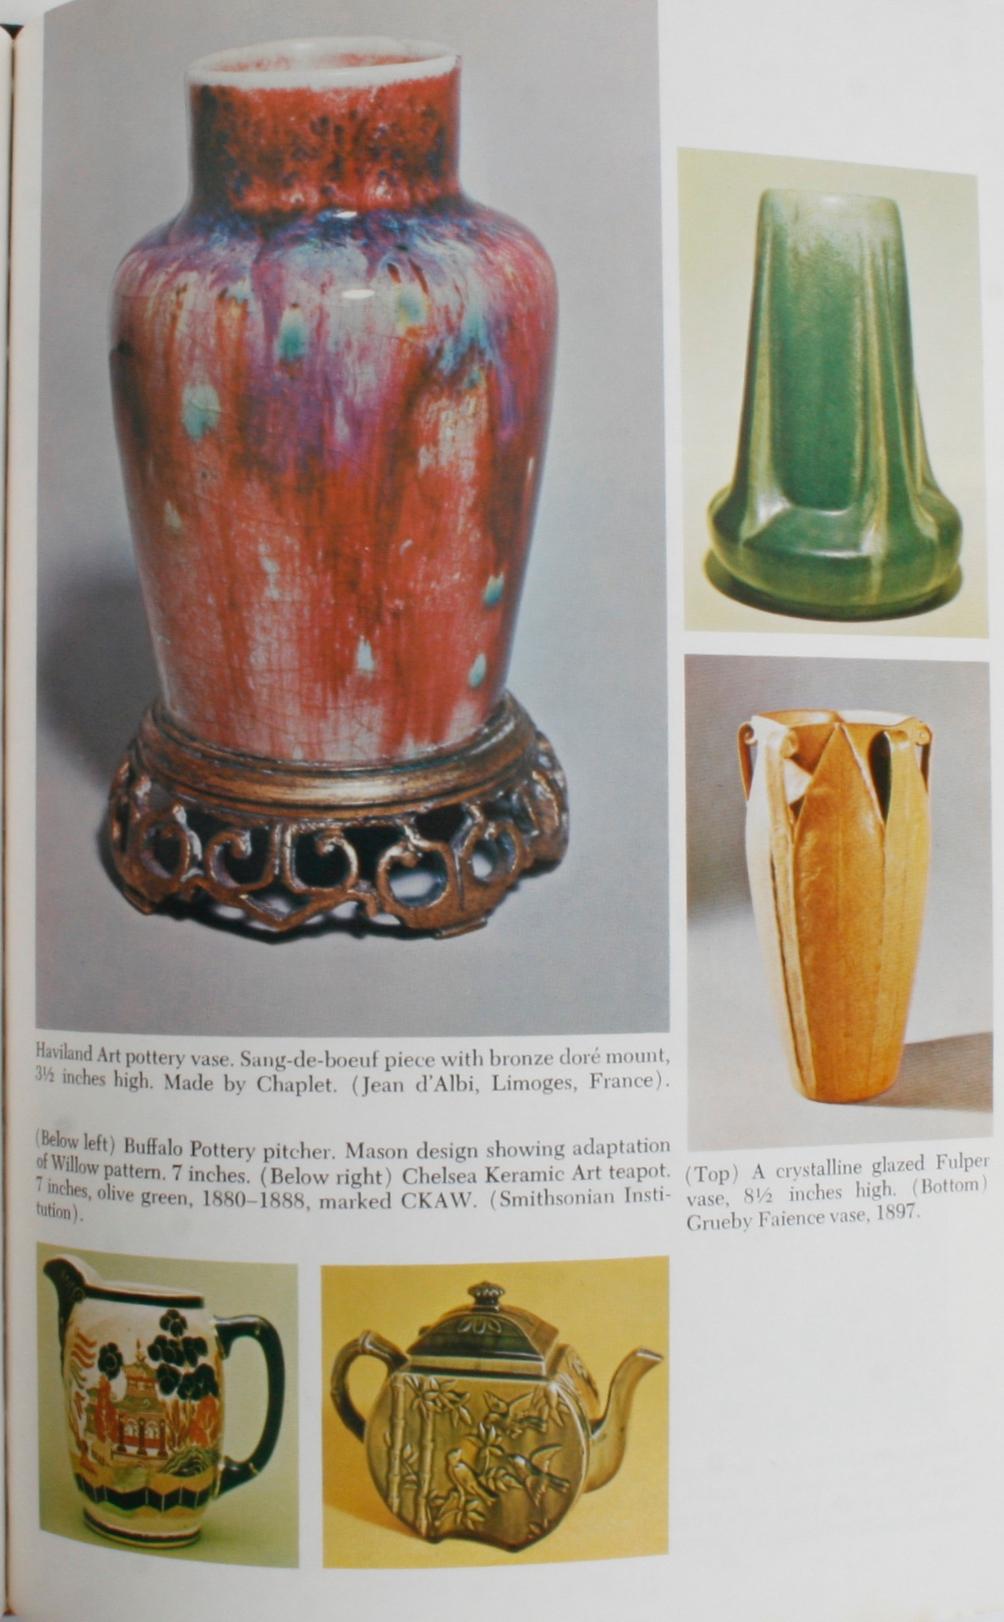 The Kovel's Collector's Guide to American Art Pottery par Ralph et Terry Kovel. New York : Crown Publishers, Inc., 1974. Couverture rigide avec jaquette. 369 pp. Un guide de référence détaillé sur la poterie d'art américaine, comprenant les